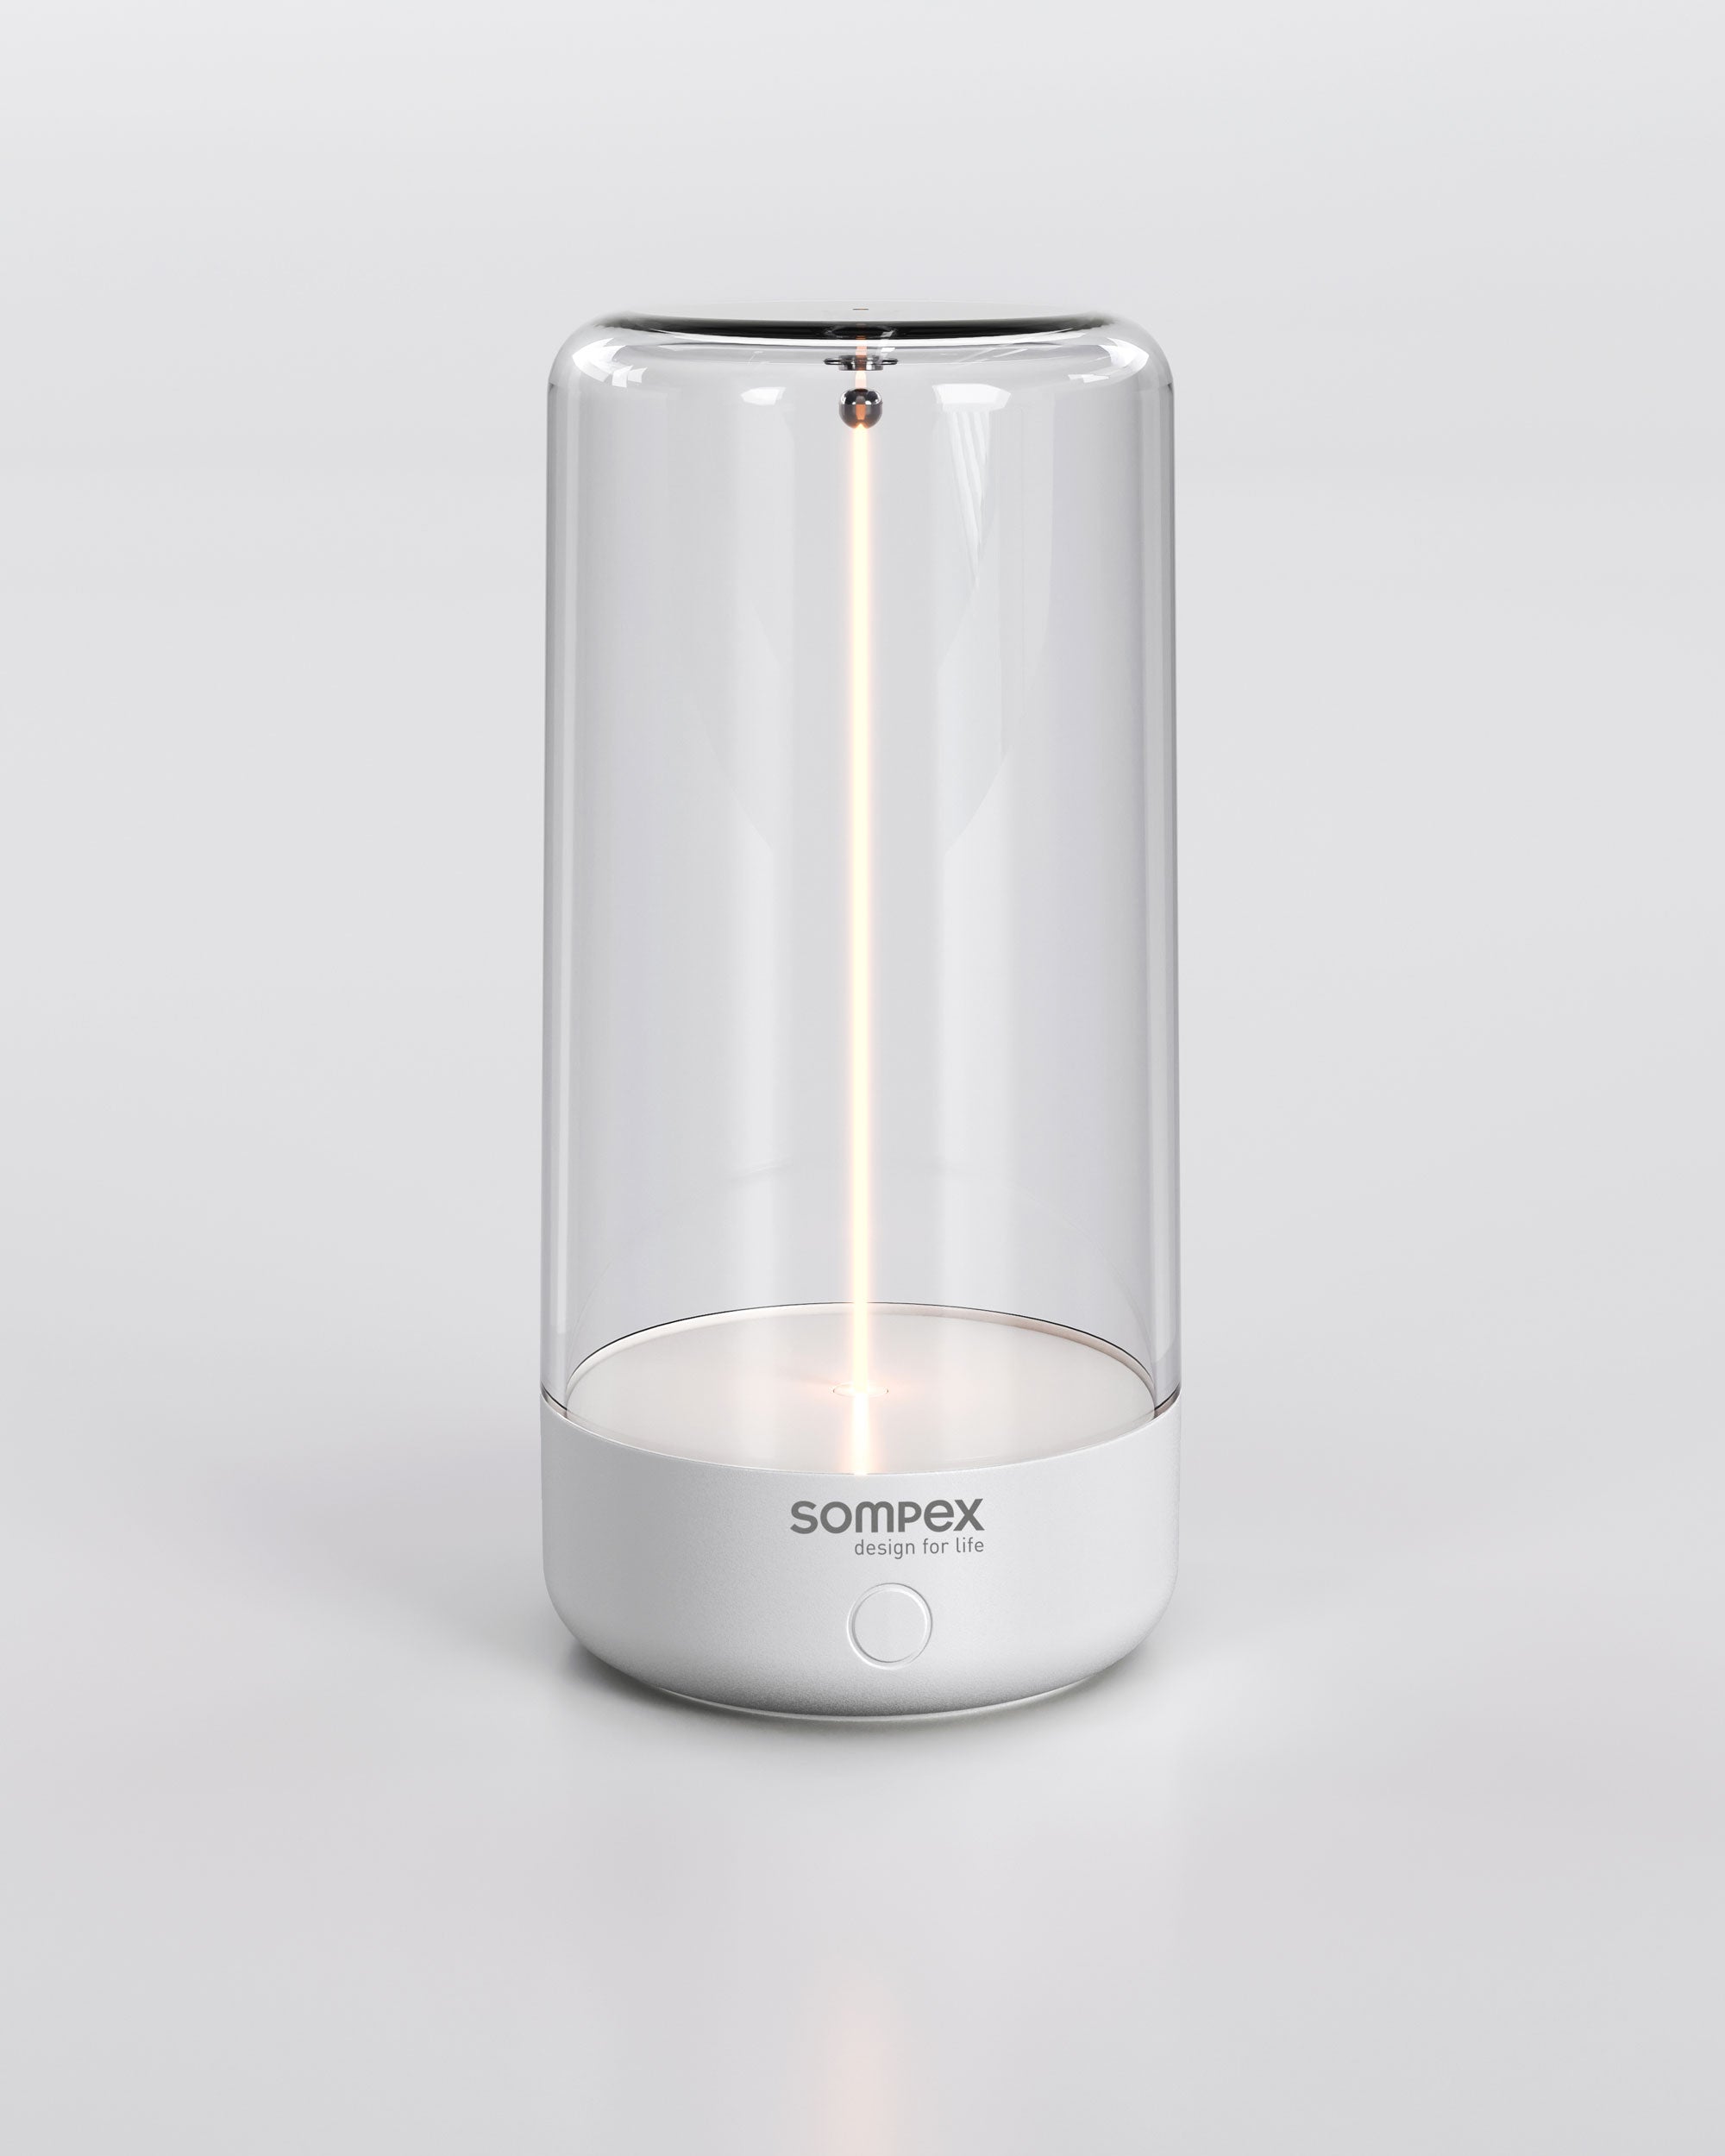 Tischleuchte Pulse von Sompex mit beweglichem Filament für kabelloses Licht, Farbe weiß